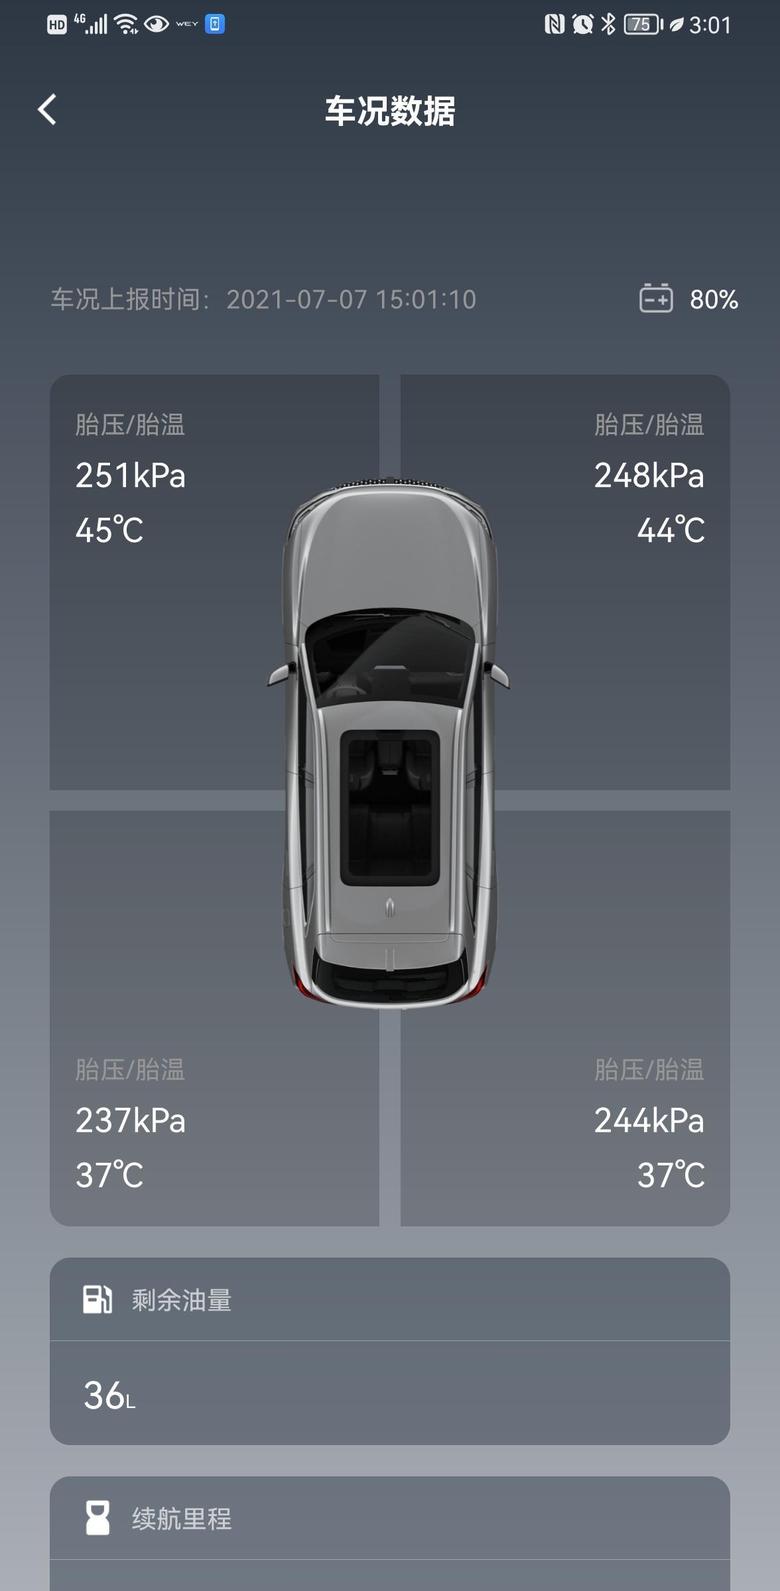 摩卡 今天开了大概五六十公里，电池怎么显示还是80%.昨天显示的79%，大家的车是不是也是没有满电的？